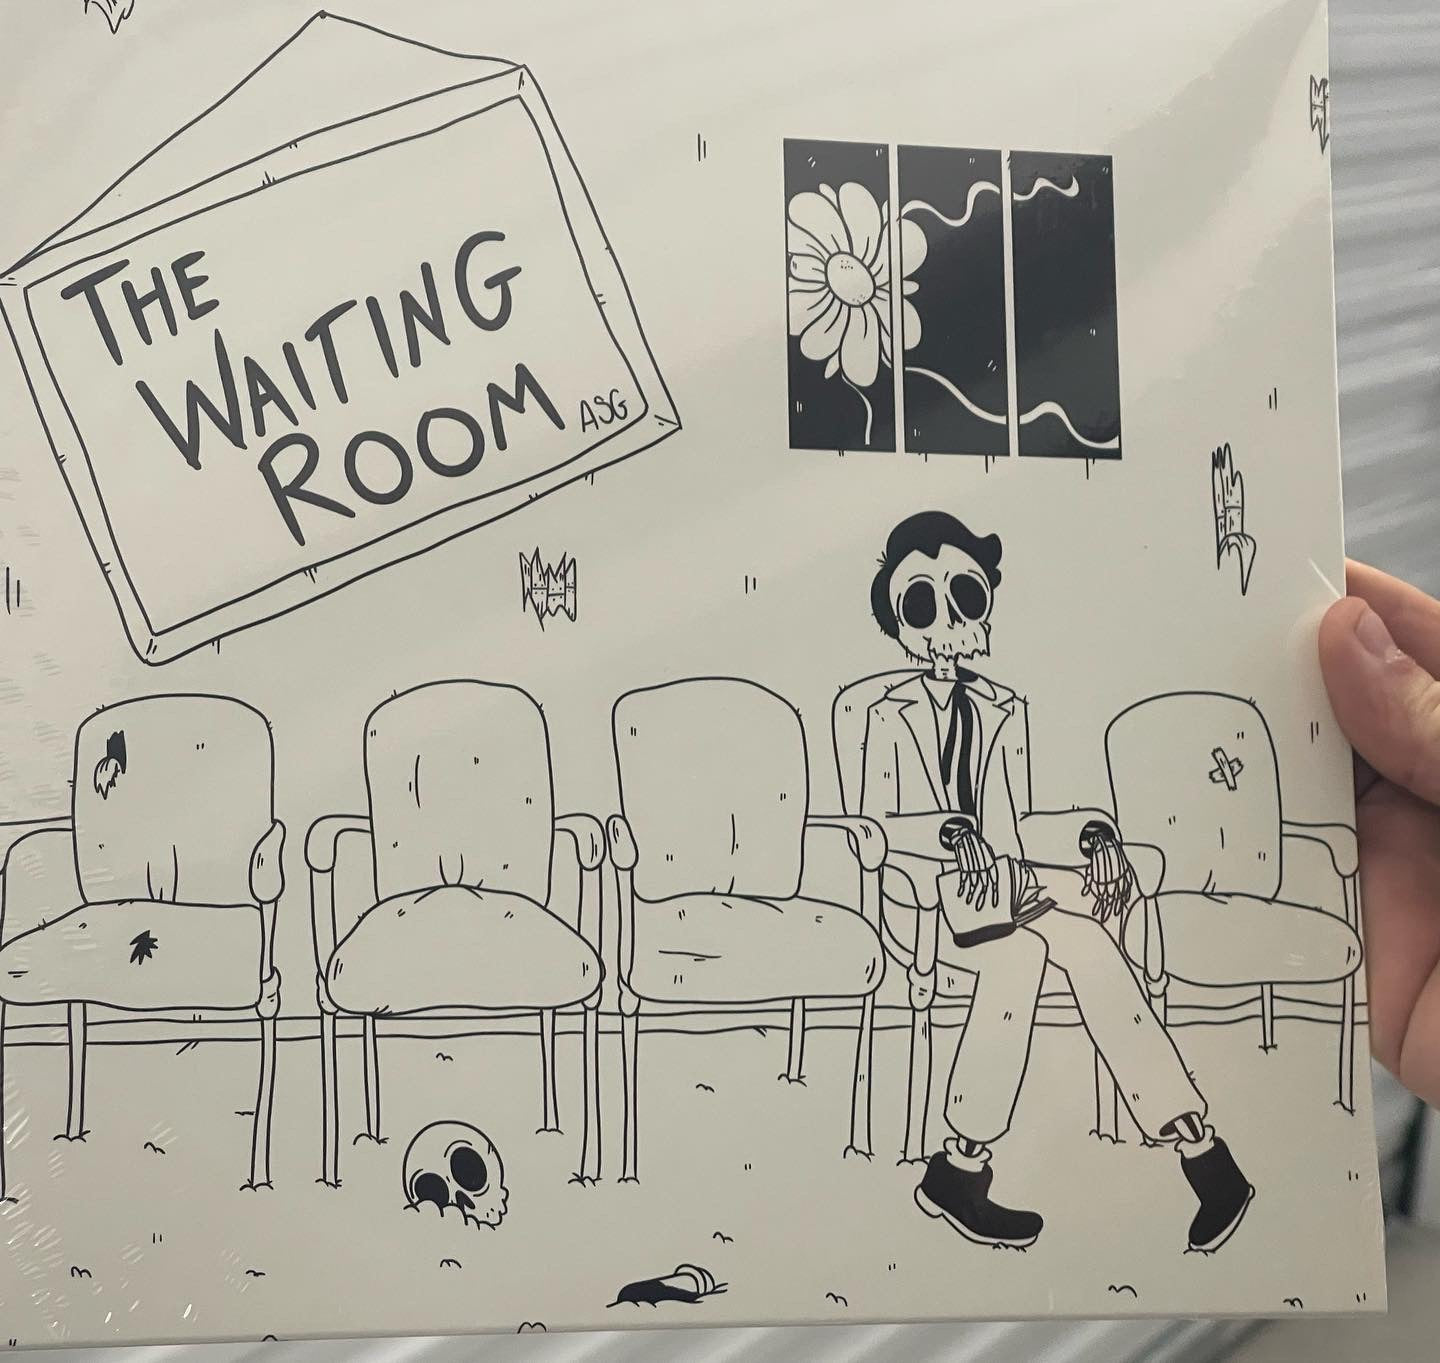 OMR-055 All Systems Go “The Waiting Room” 10” Vinyl (Black w/White Splatter)